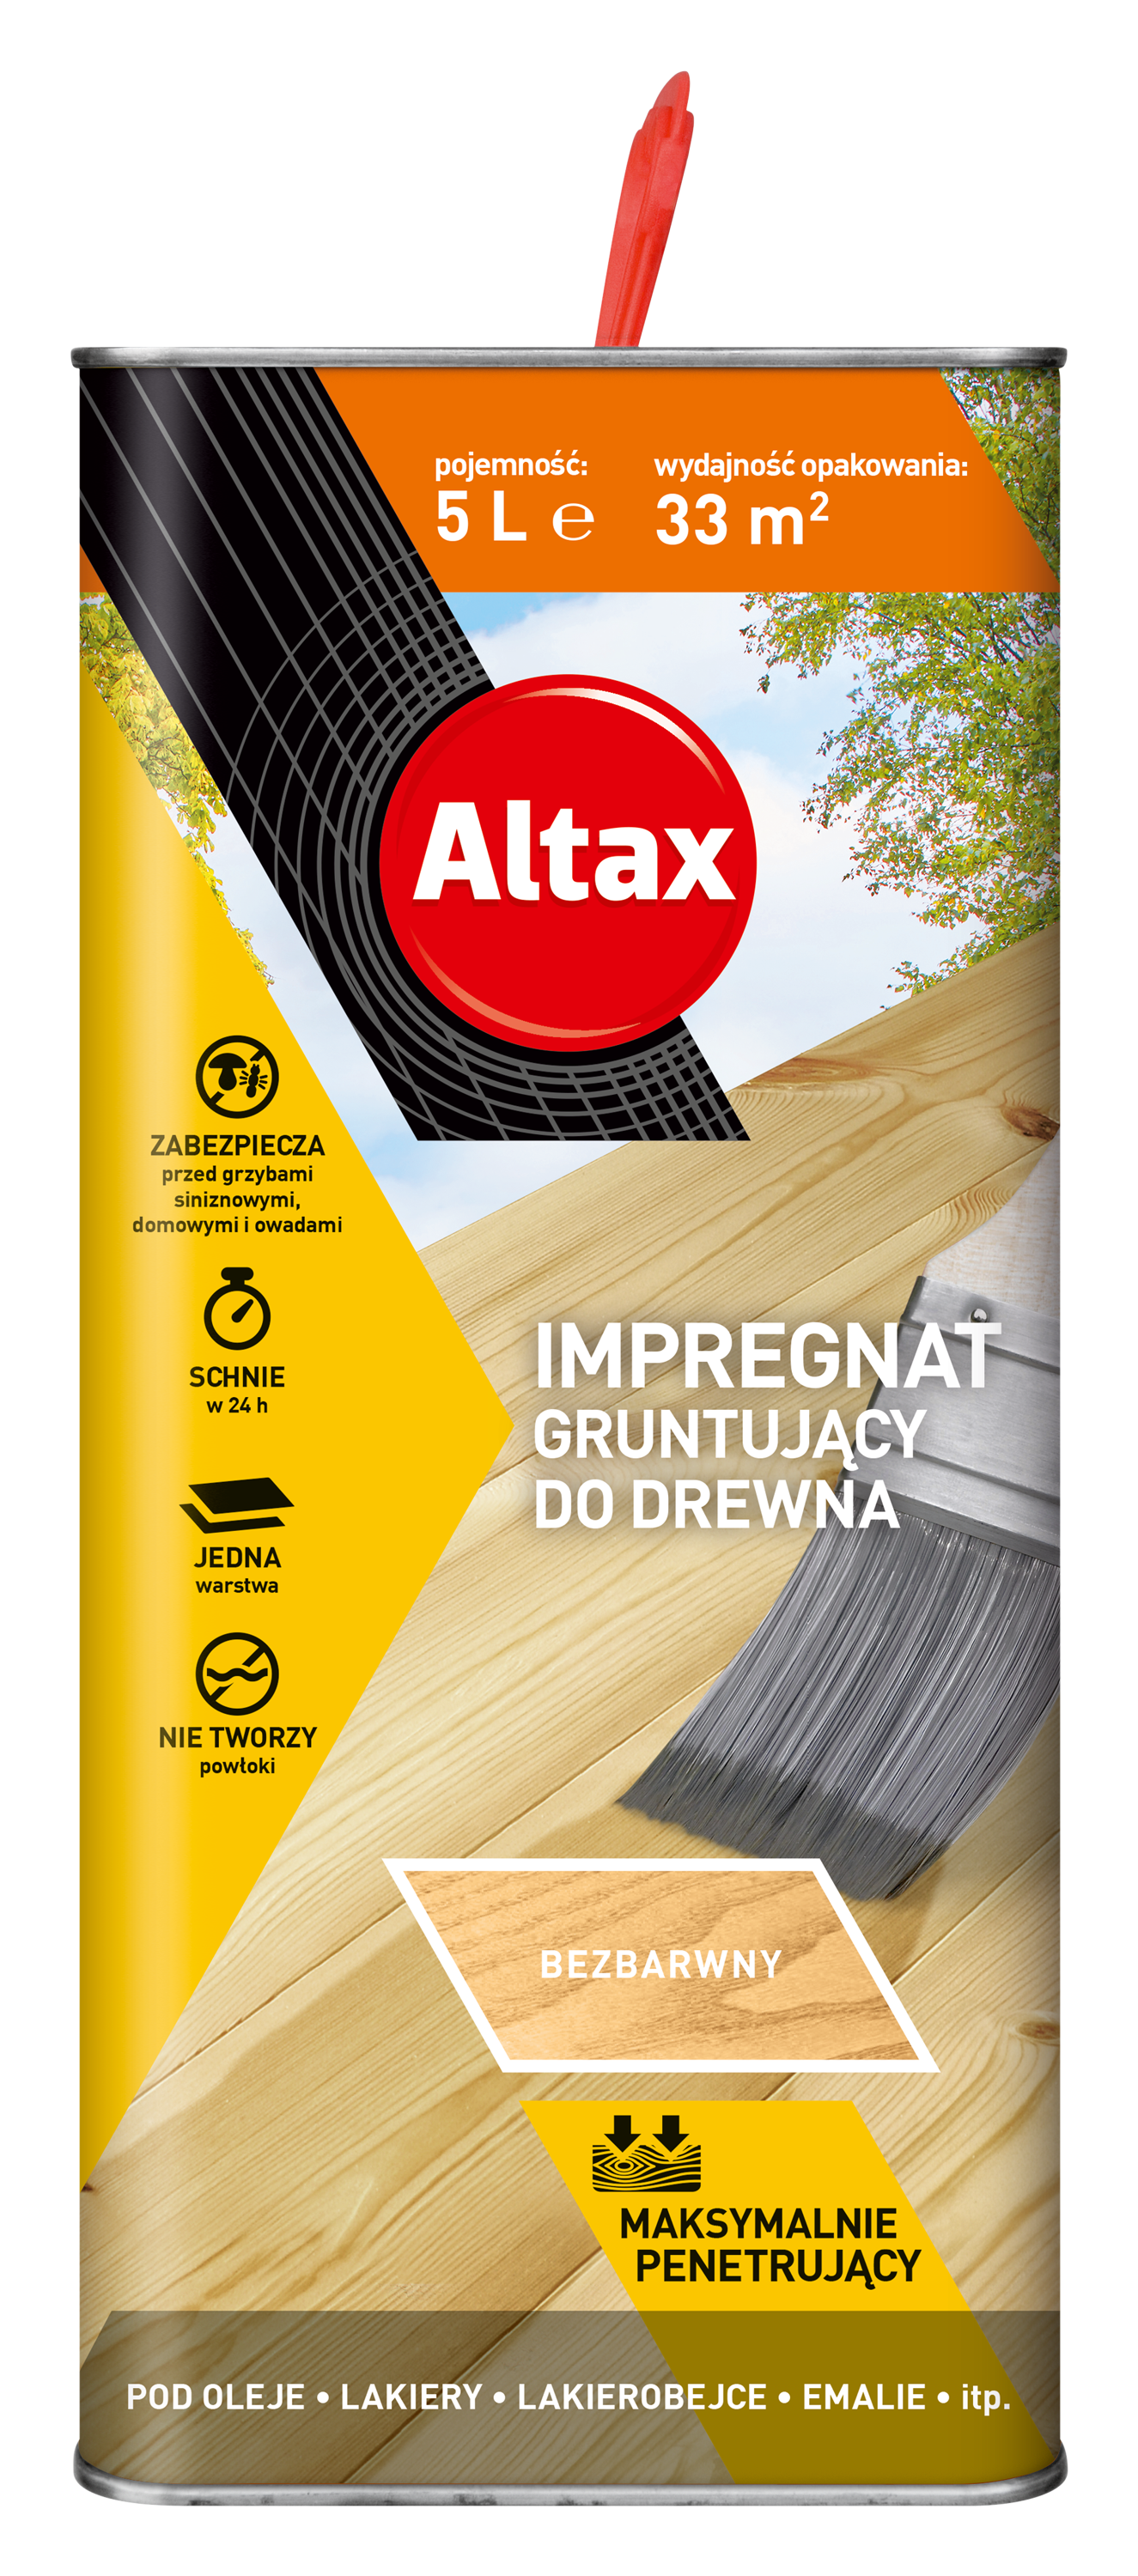 ALTAX-impregnat-gruntujacy-do-drewna-5L-wiz-wyciety-09